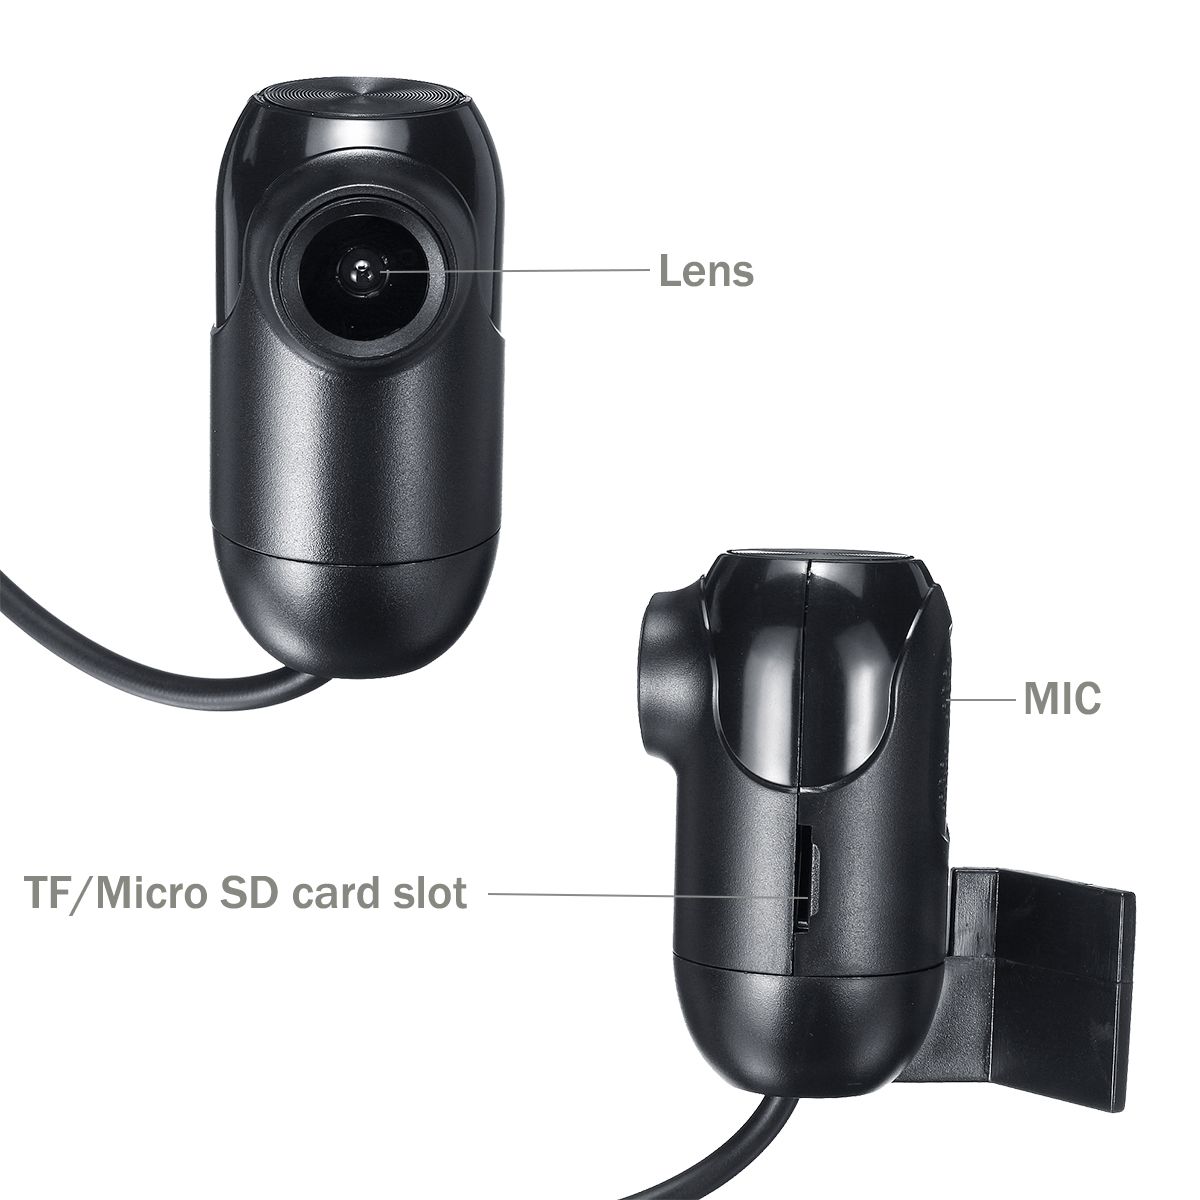 1080P-Mini-WiFi-Dash-Cam-170-Degree-Wide-Viewing-Angle-Driving-Recorder-Car-DVR-Camera-1423105